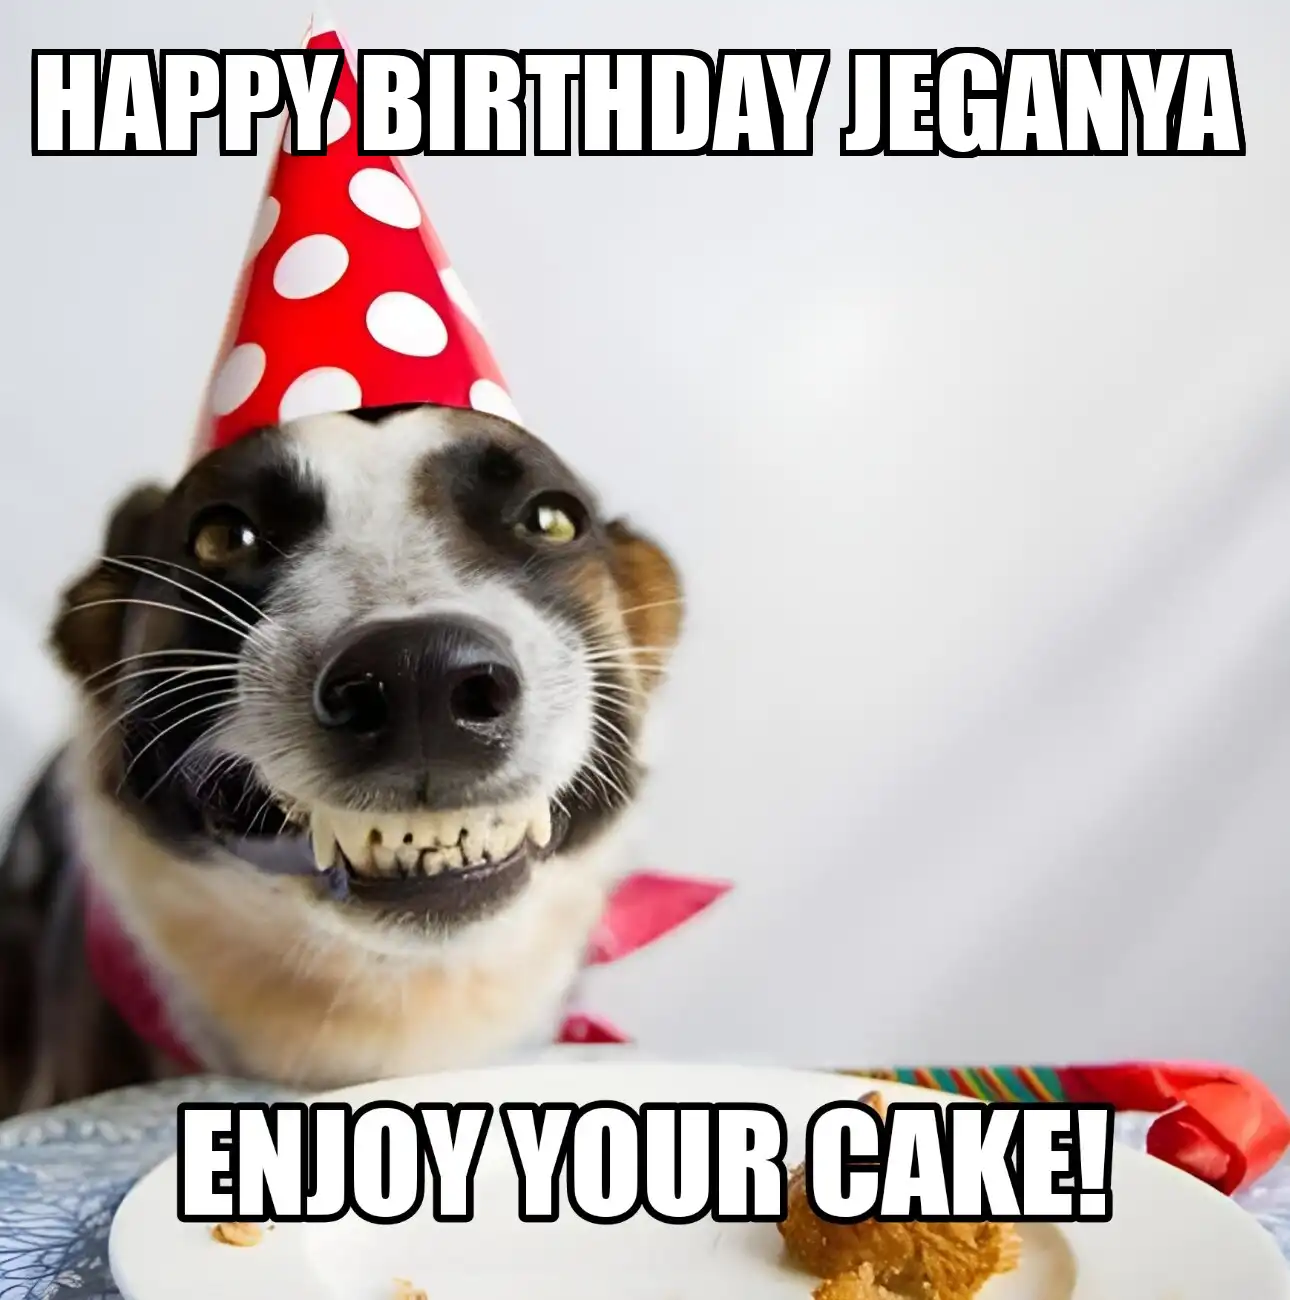 Happy Birthday Jeganya Enjoy Your Cake Dog Meme